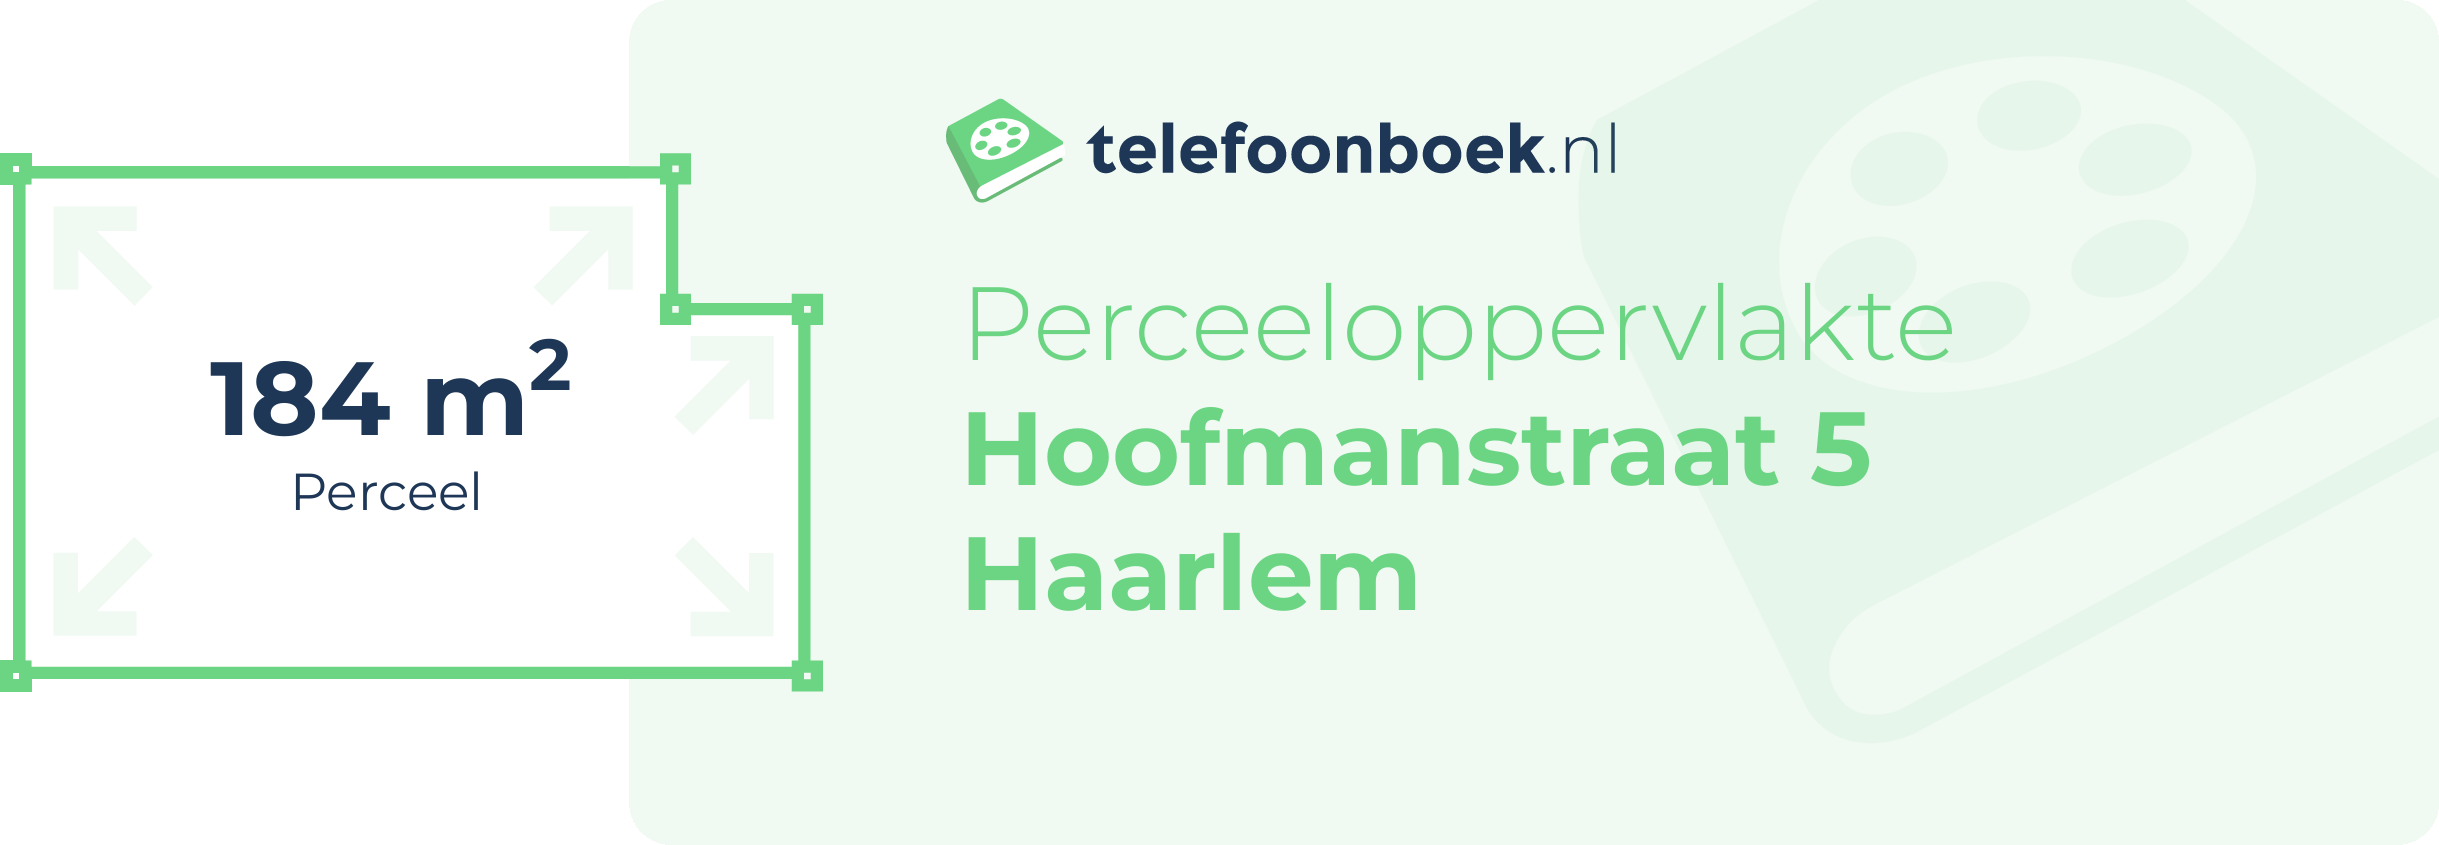 Perceeloppervlakte Hoofmanstraat 5 Haarlem